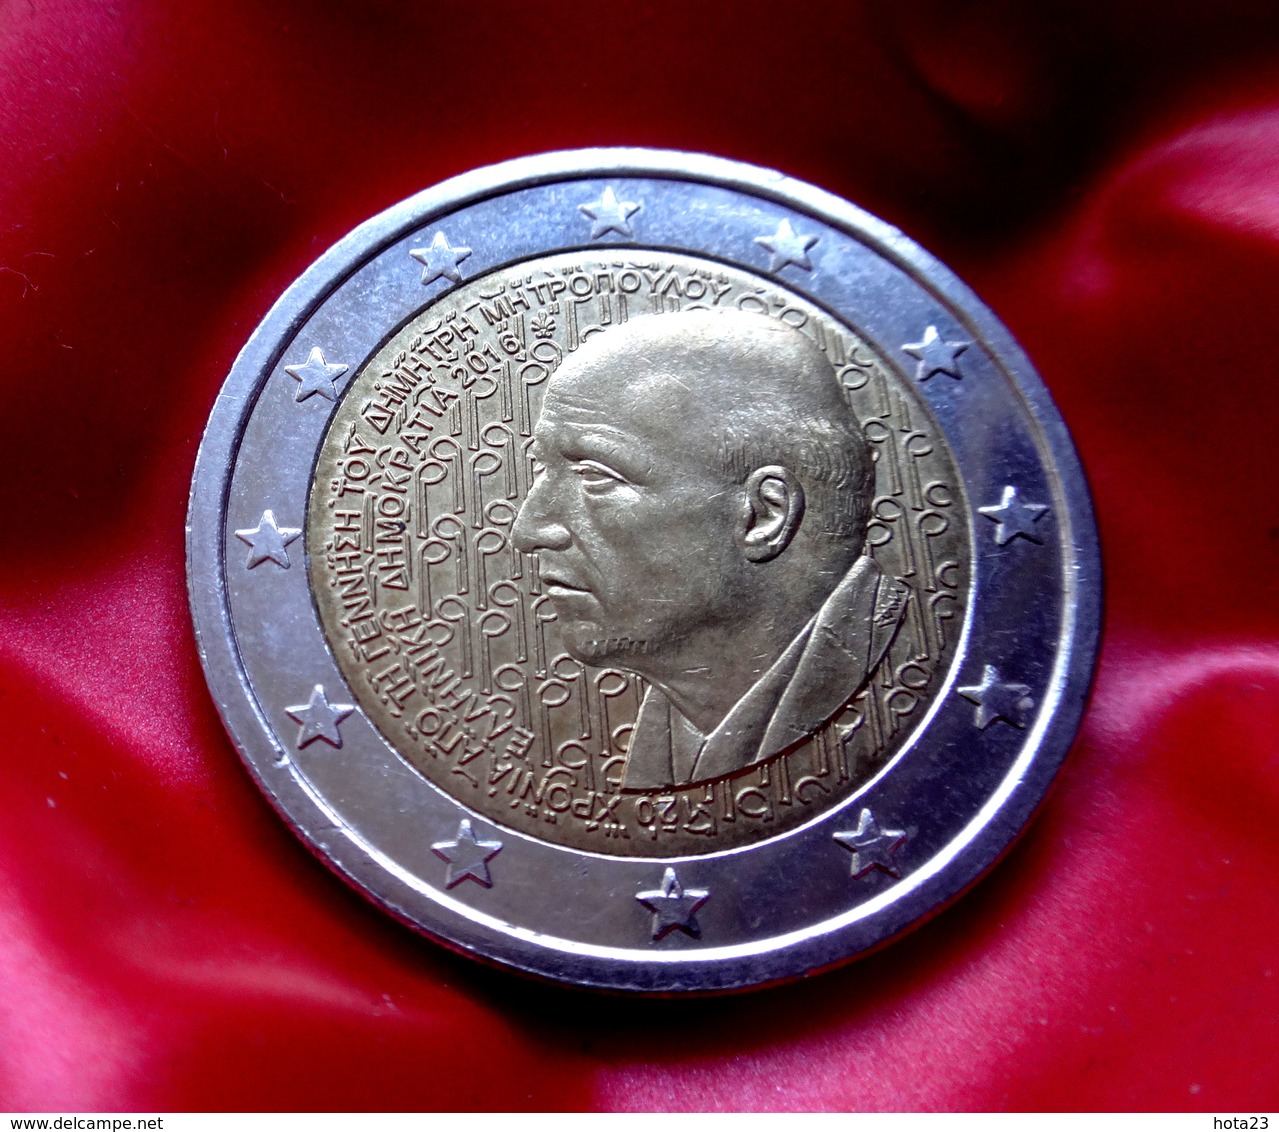 Greece 2016 2€ Euro Bi-metallic Commemorative Coin Dimitris Mitropoulos  Coin  CIRCULATED - Greece